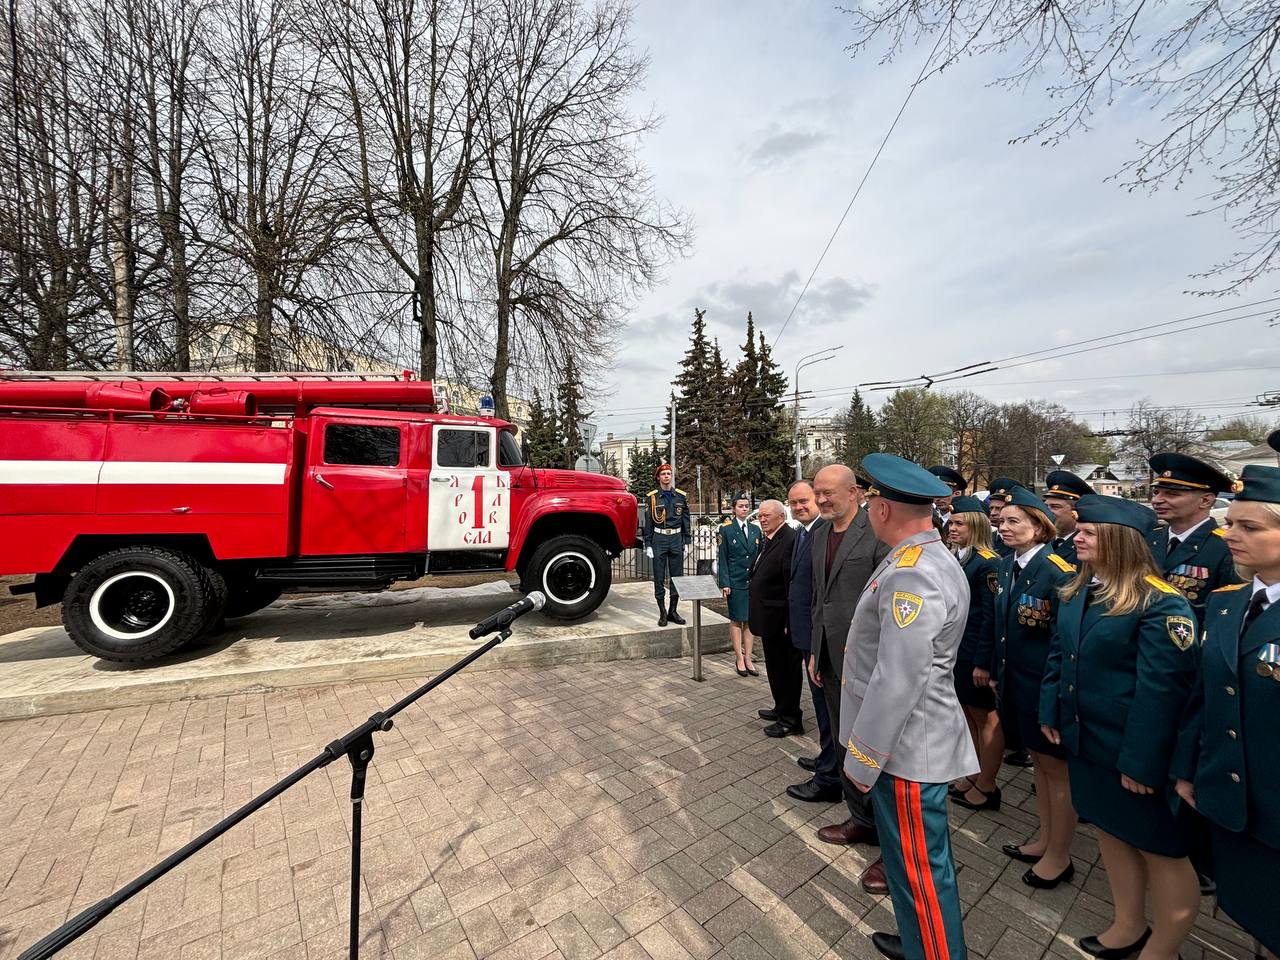 30 лет прослужила в боевом расчете. В Ярославле торжественно открыли памятник пожарной машине